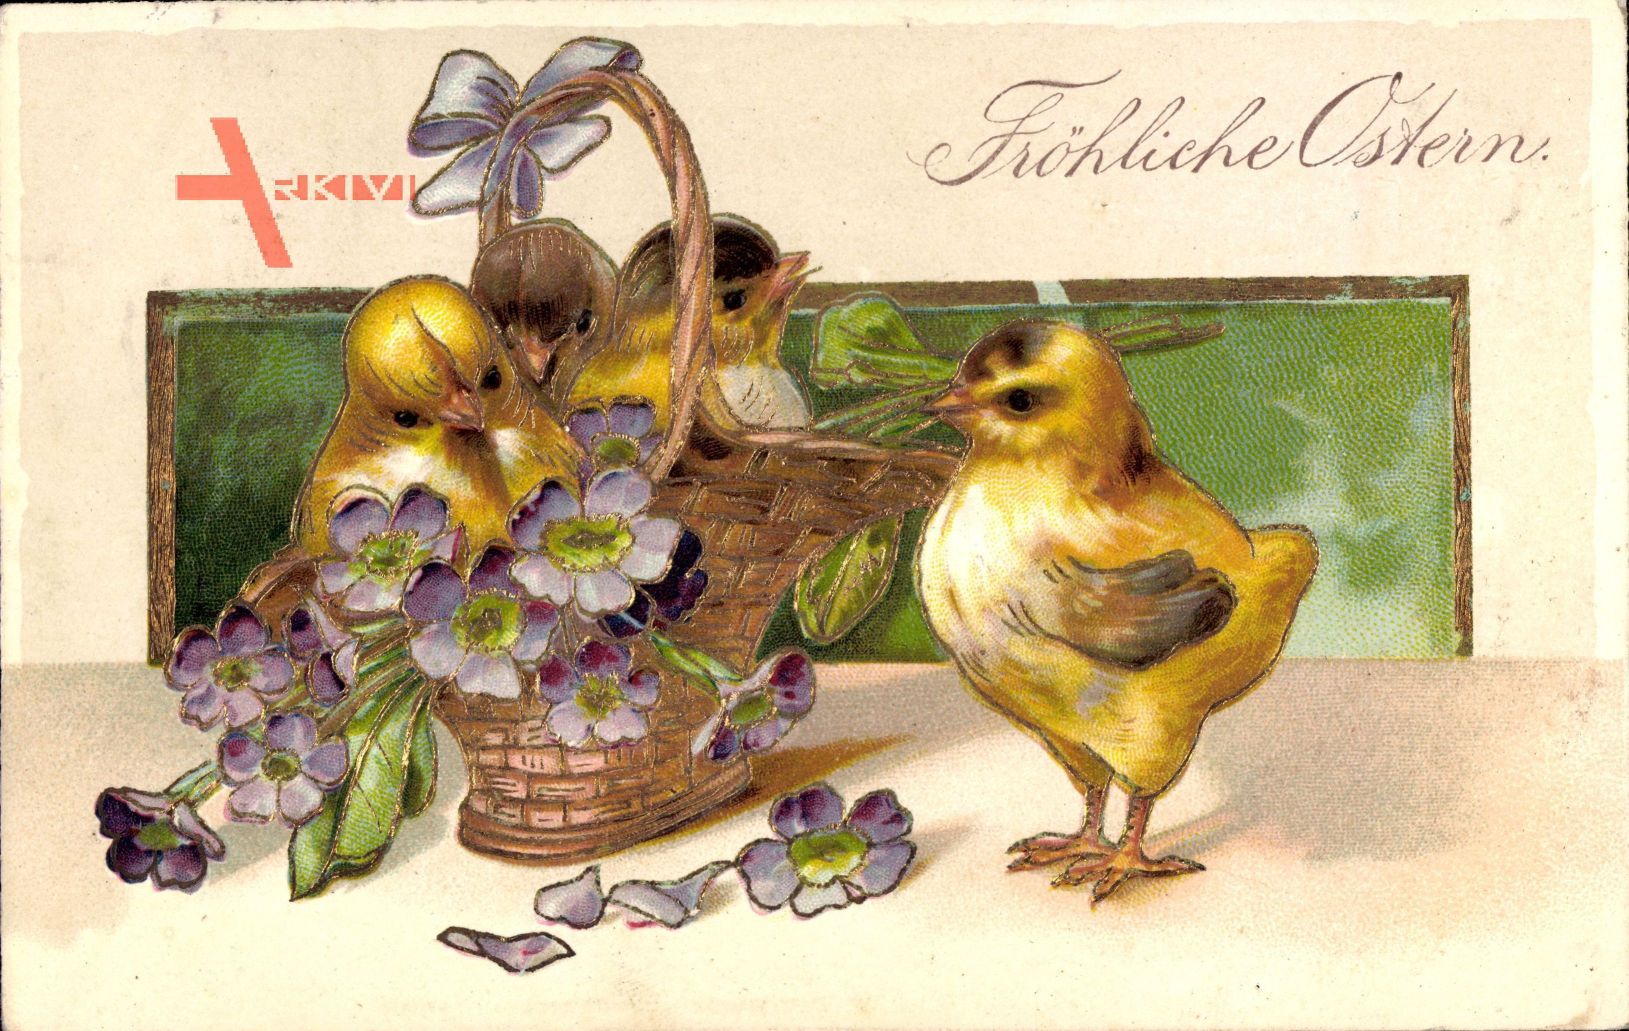 Glückwunsch Ostern, Drei Küken in einem Korb mit Blumen